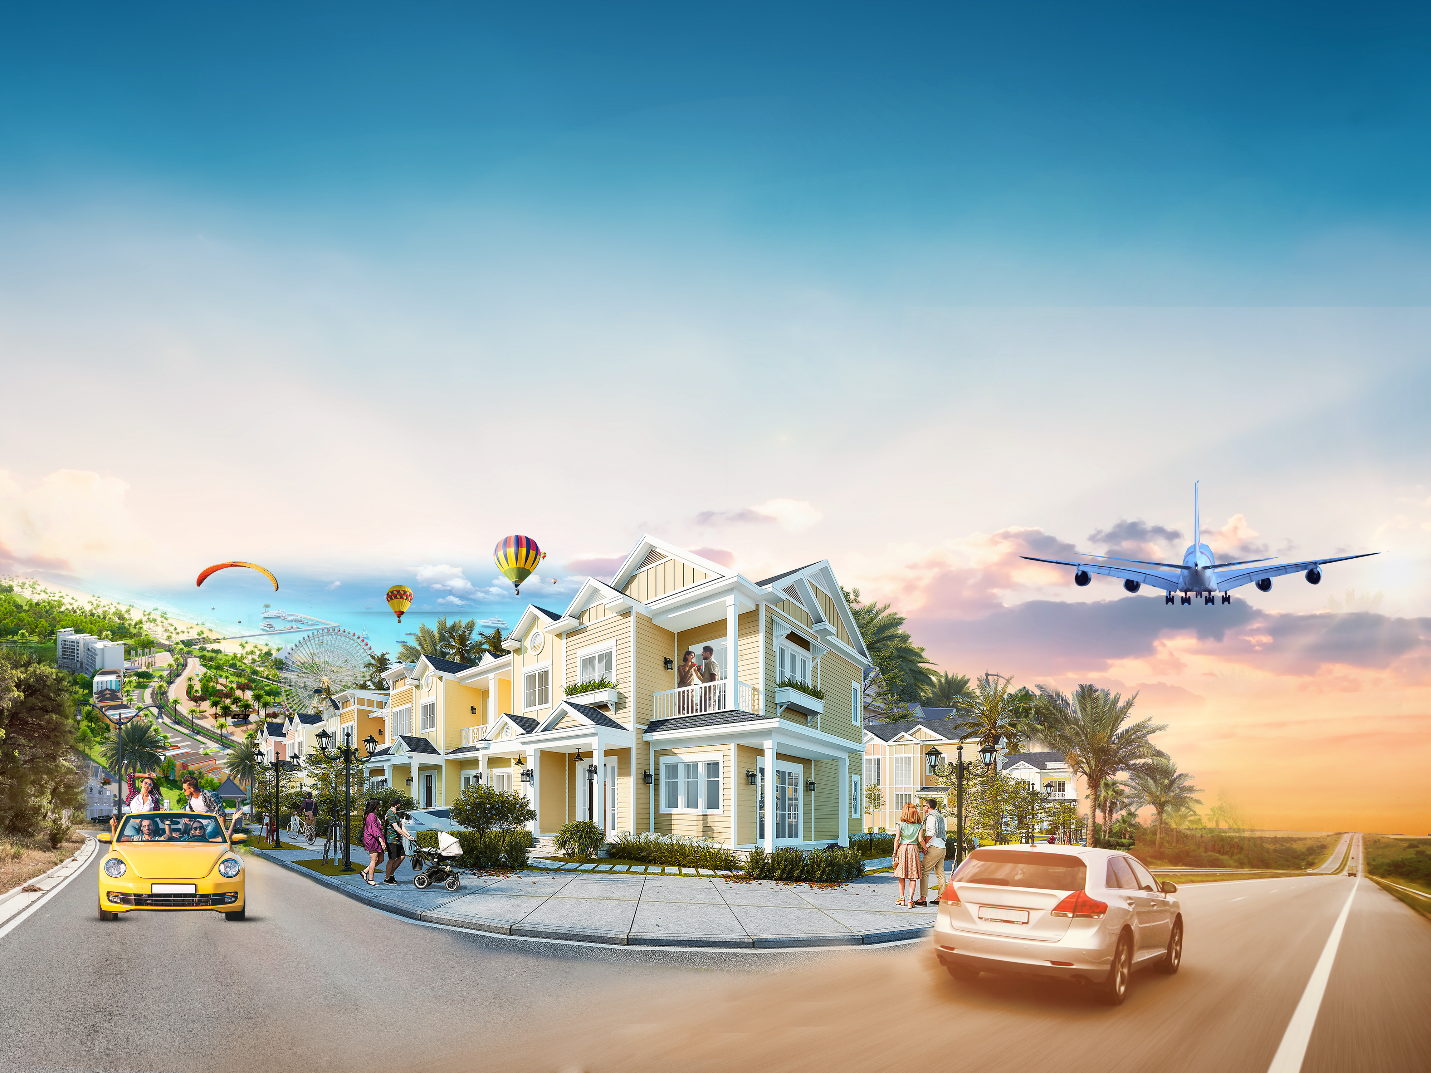 Second home ven biển tại Phan Thiết, Bình Thuận được dự báo tạo “làn sóng” đầu tư mới trên thị trường bất động sản (Ảnh: Mẫu second home tại NovaWorld Phan Thiet)